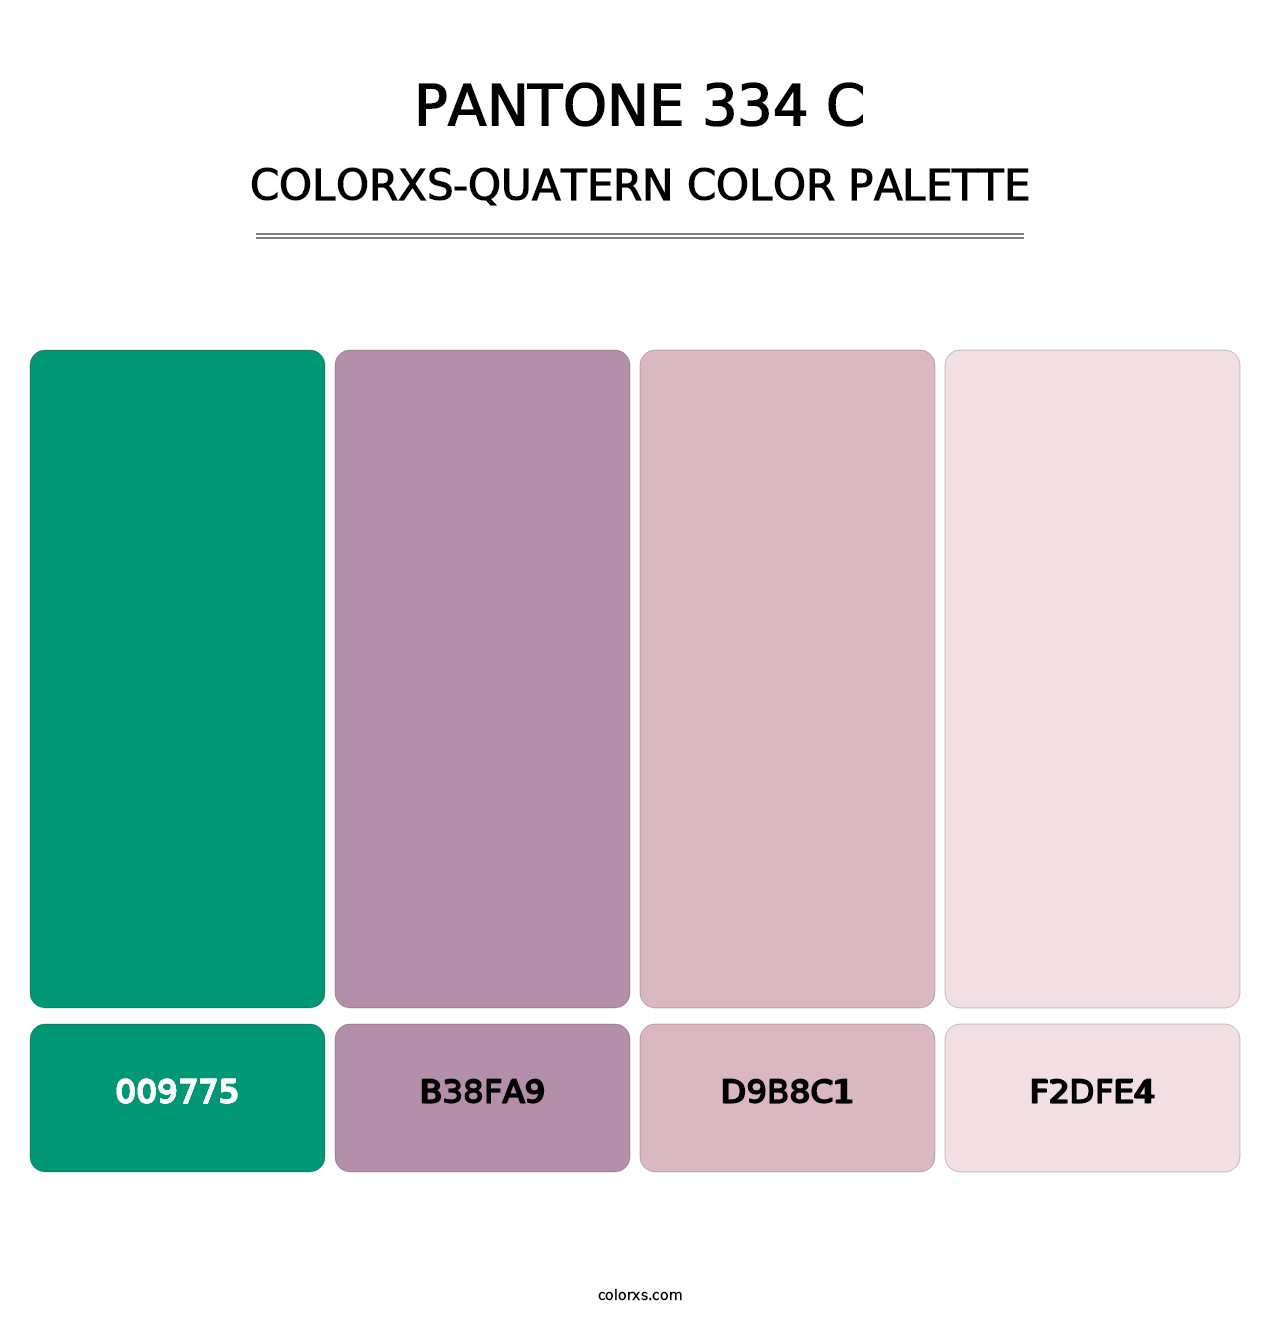 PANTONE 334 C - Colorxs Quatern Palette